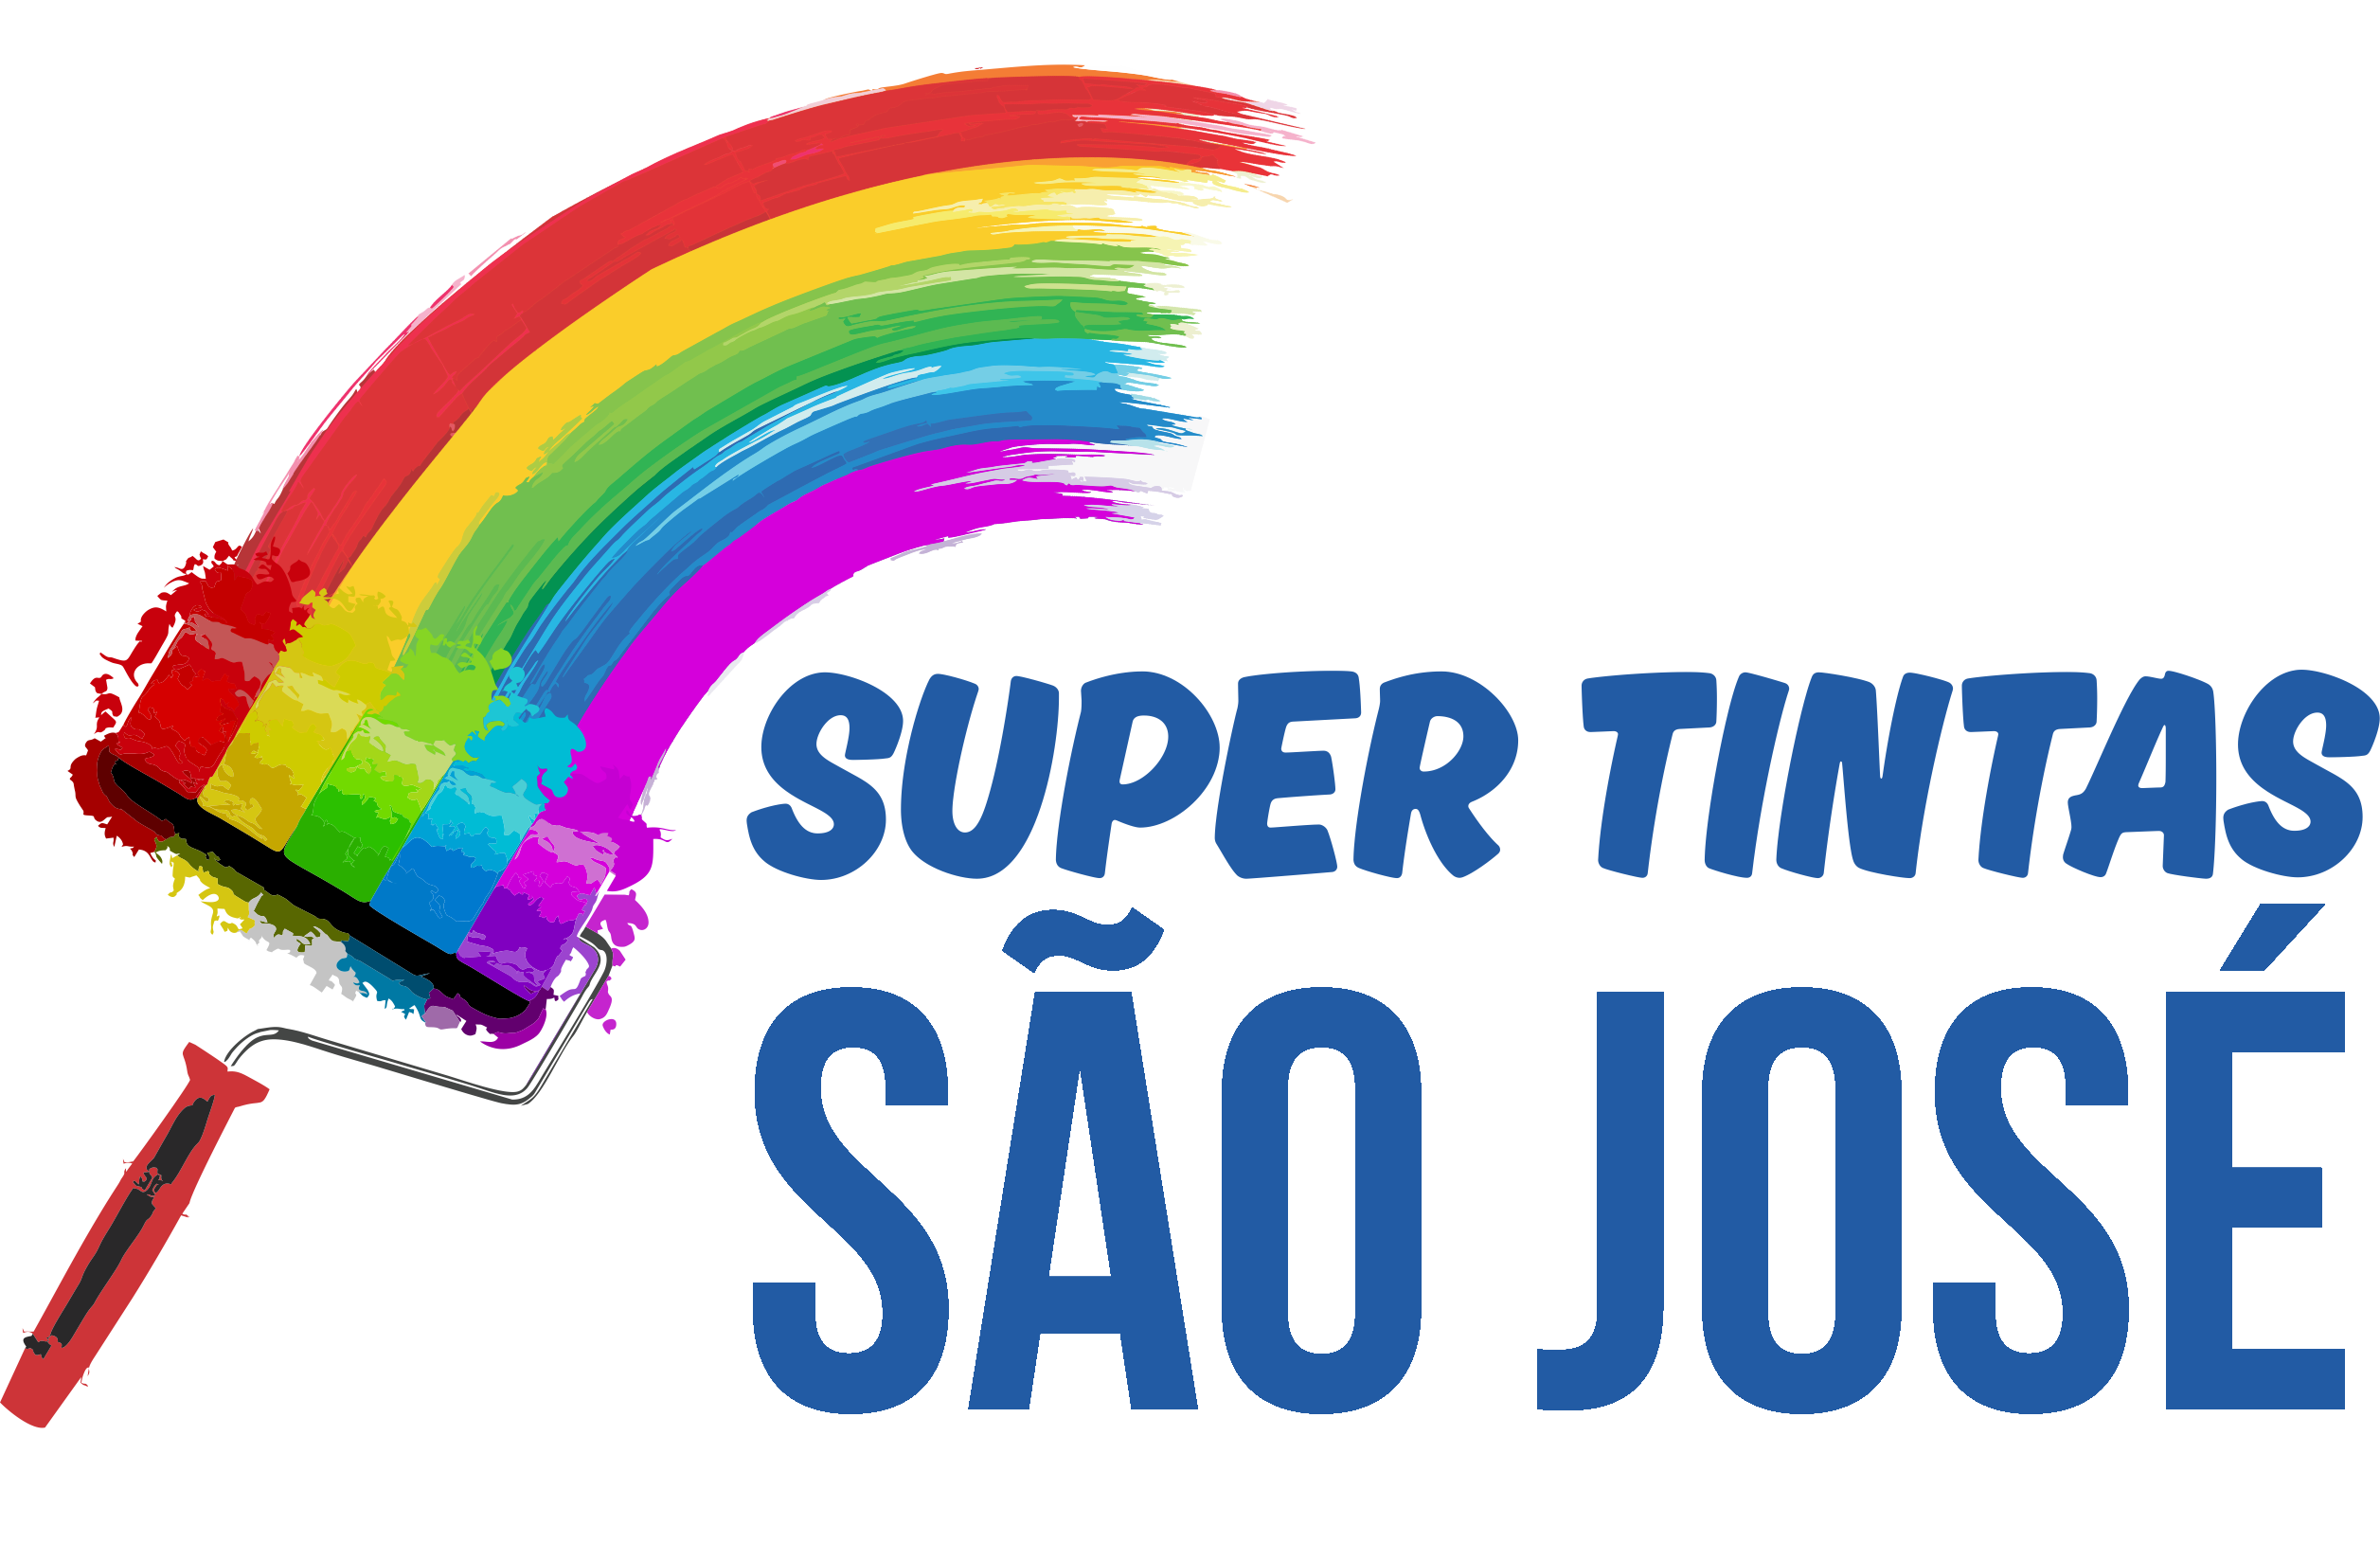 Super Tintas São José